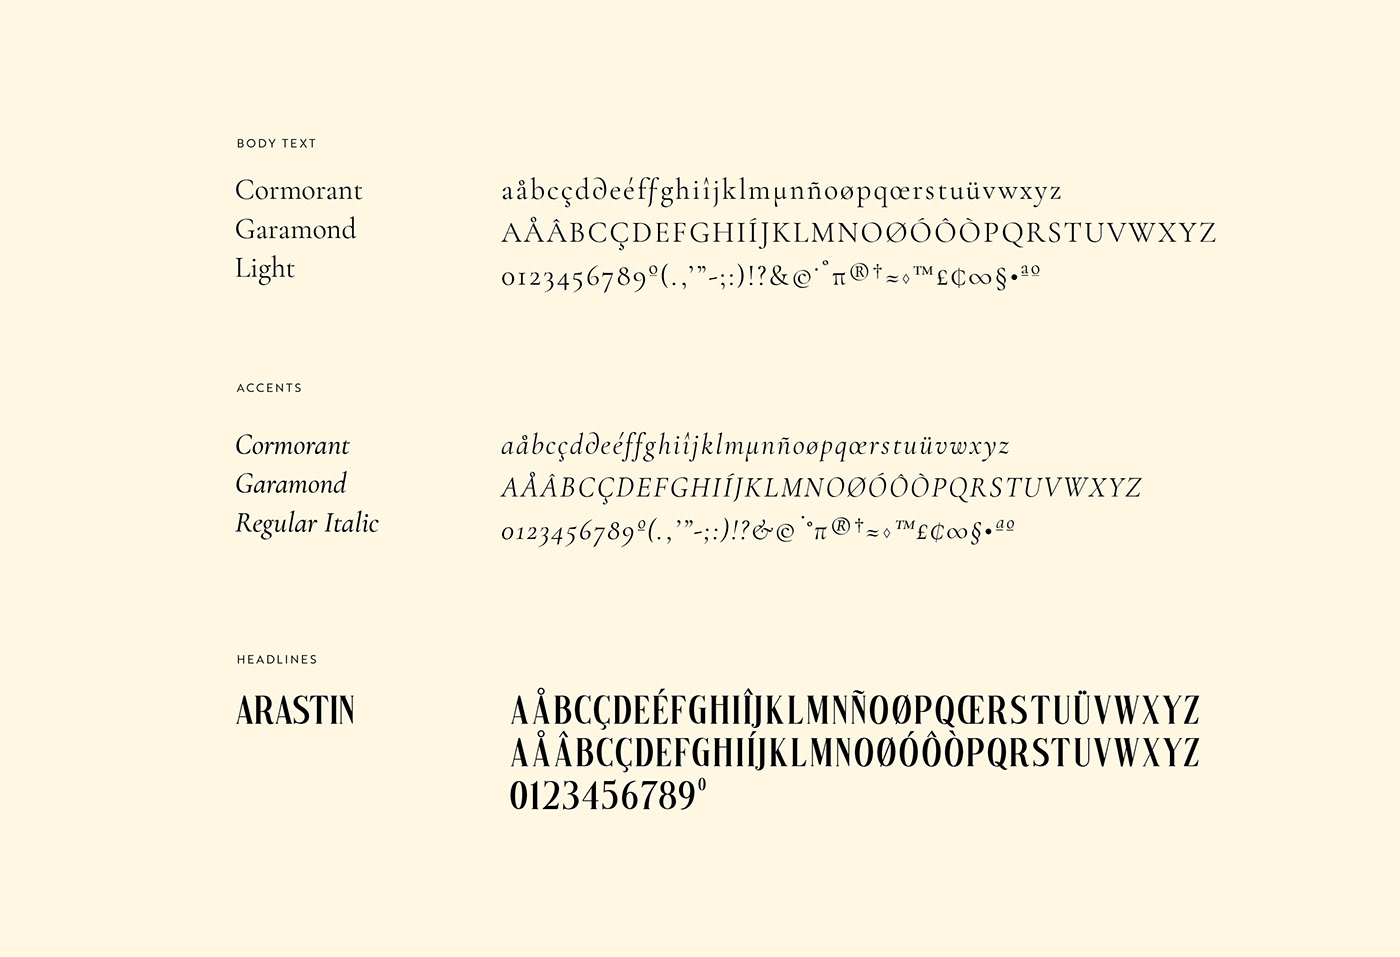 Typefaces
